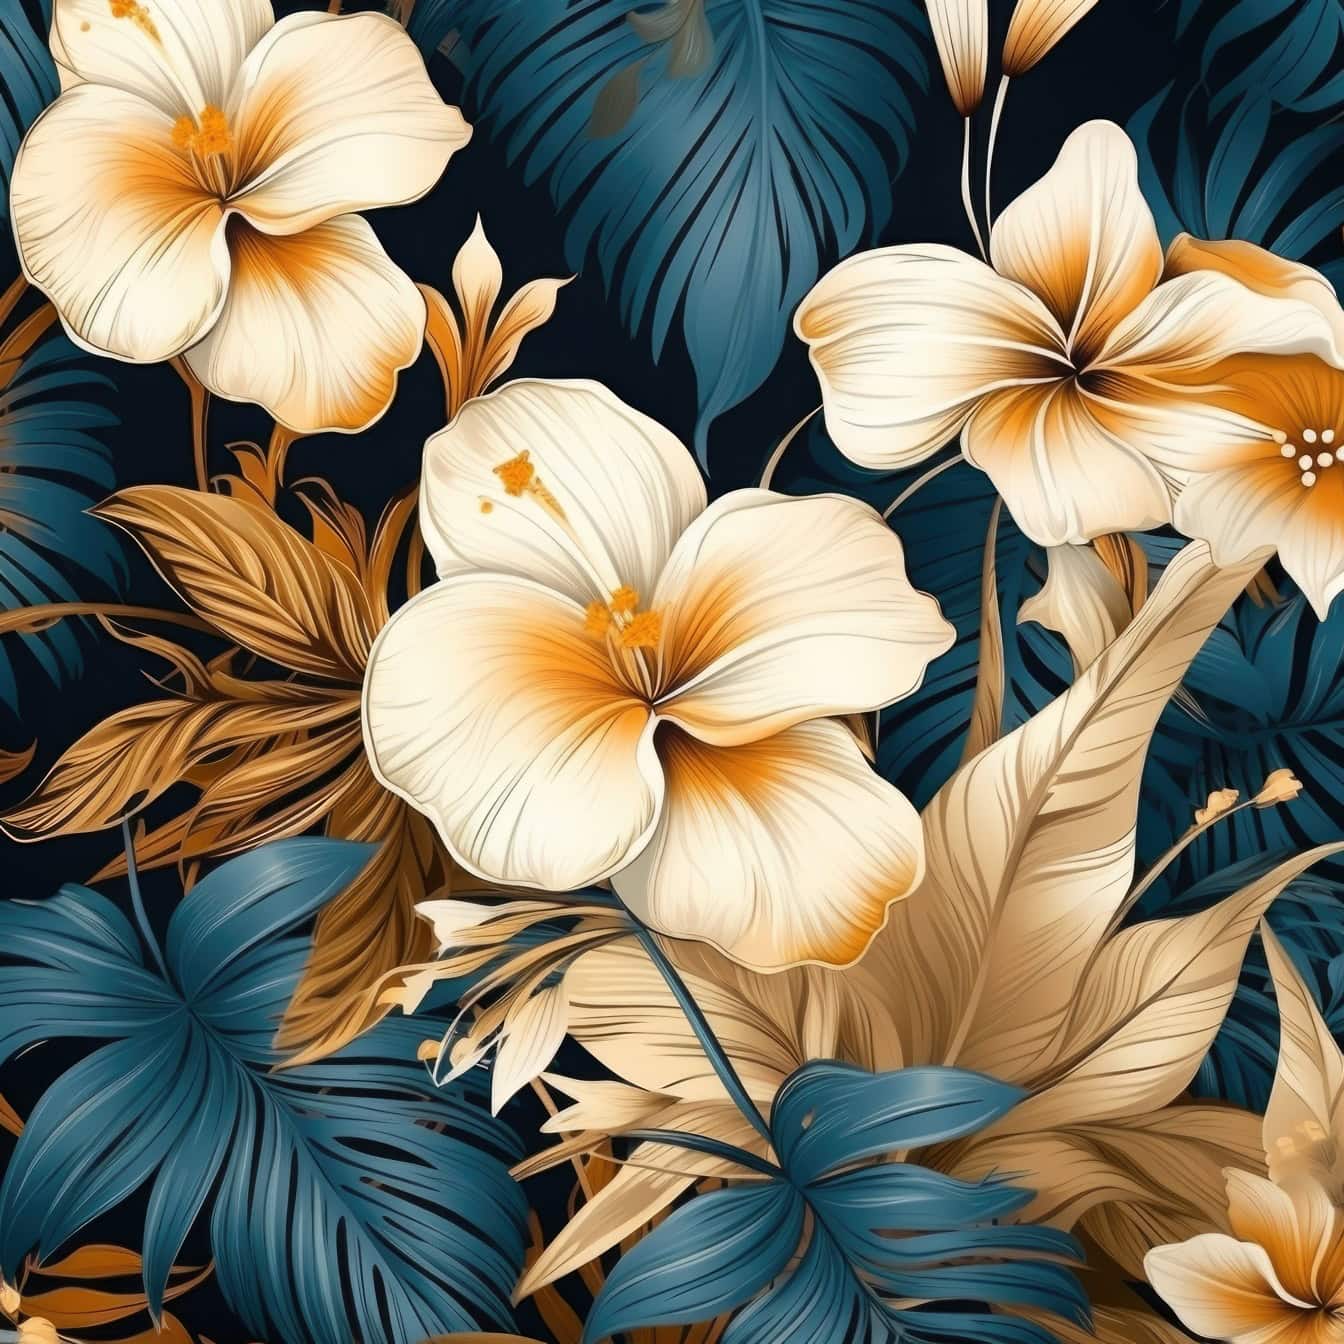 배경에 어두운 푸른 빛이 도는 잎이 있는 황금빛 갈색 꽃의 꽃 패턴